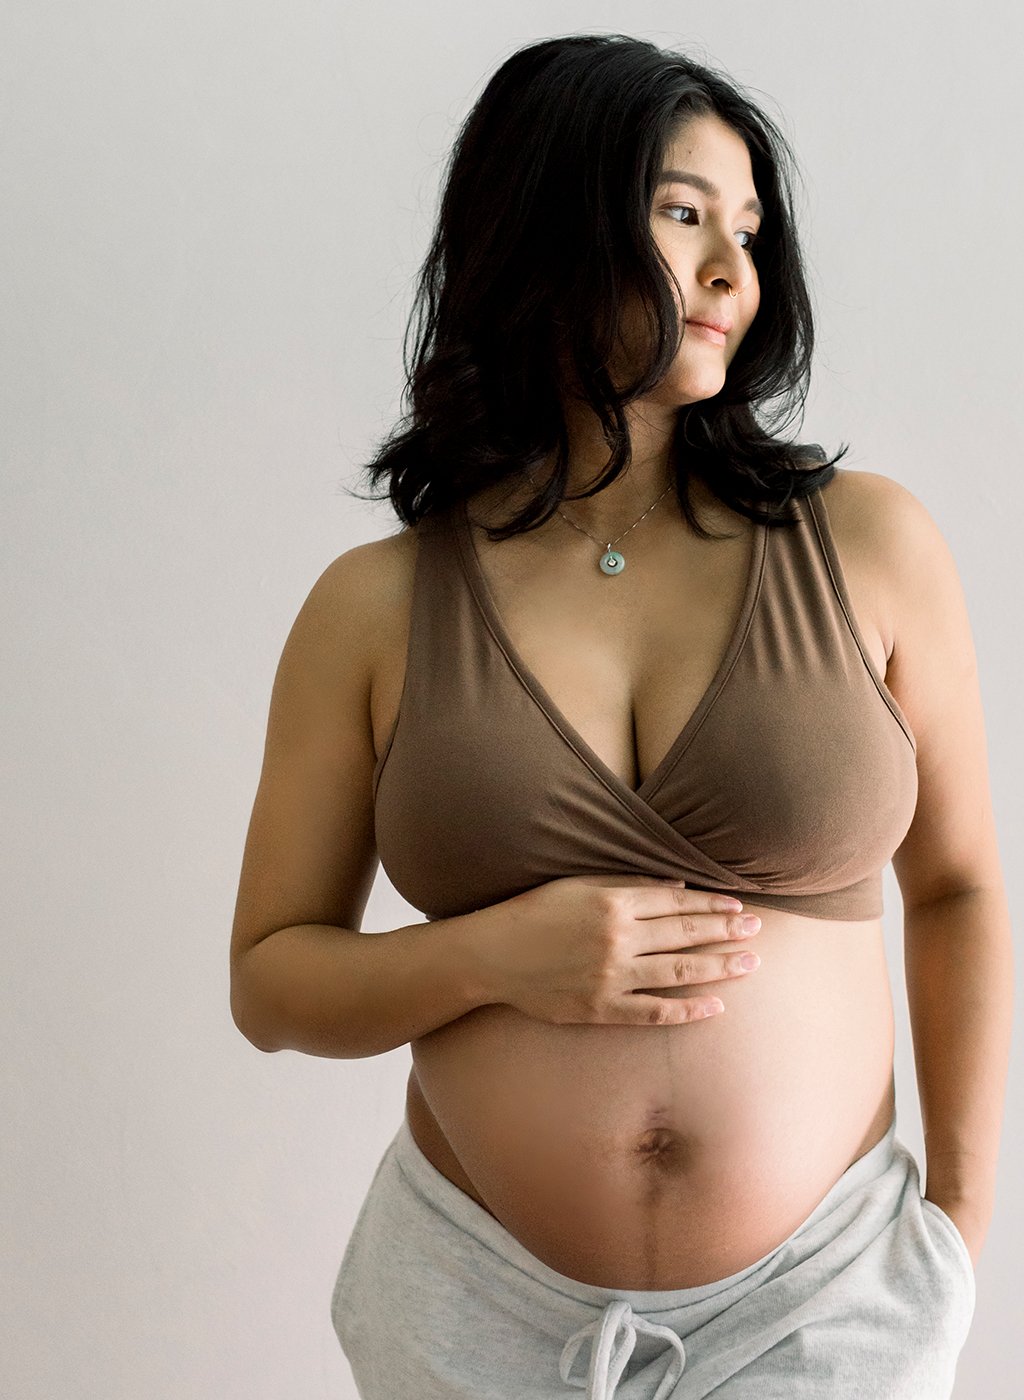 Buy Lovemere Bra Extenders Pack for Pregnant Moms